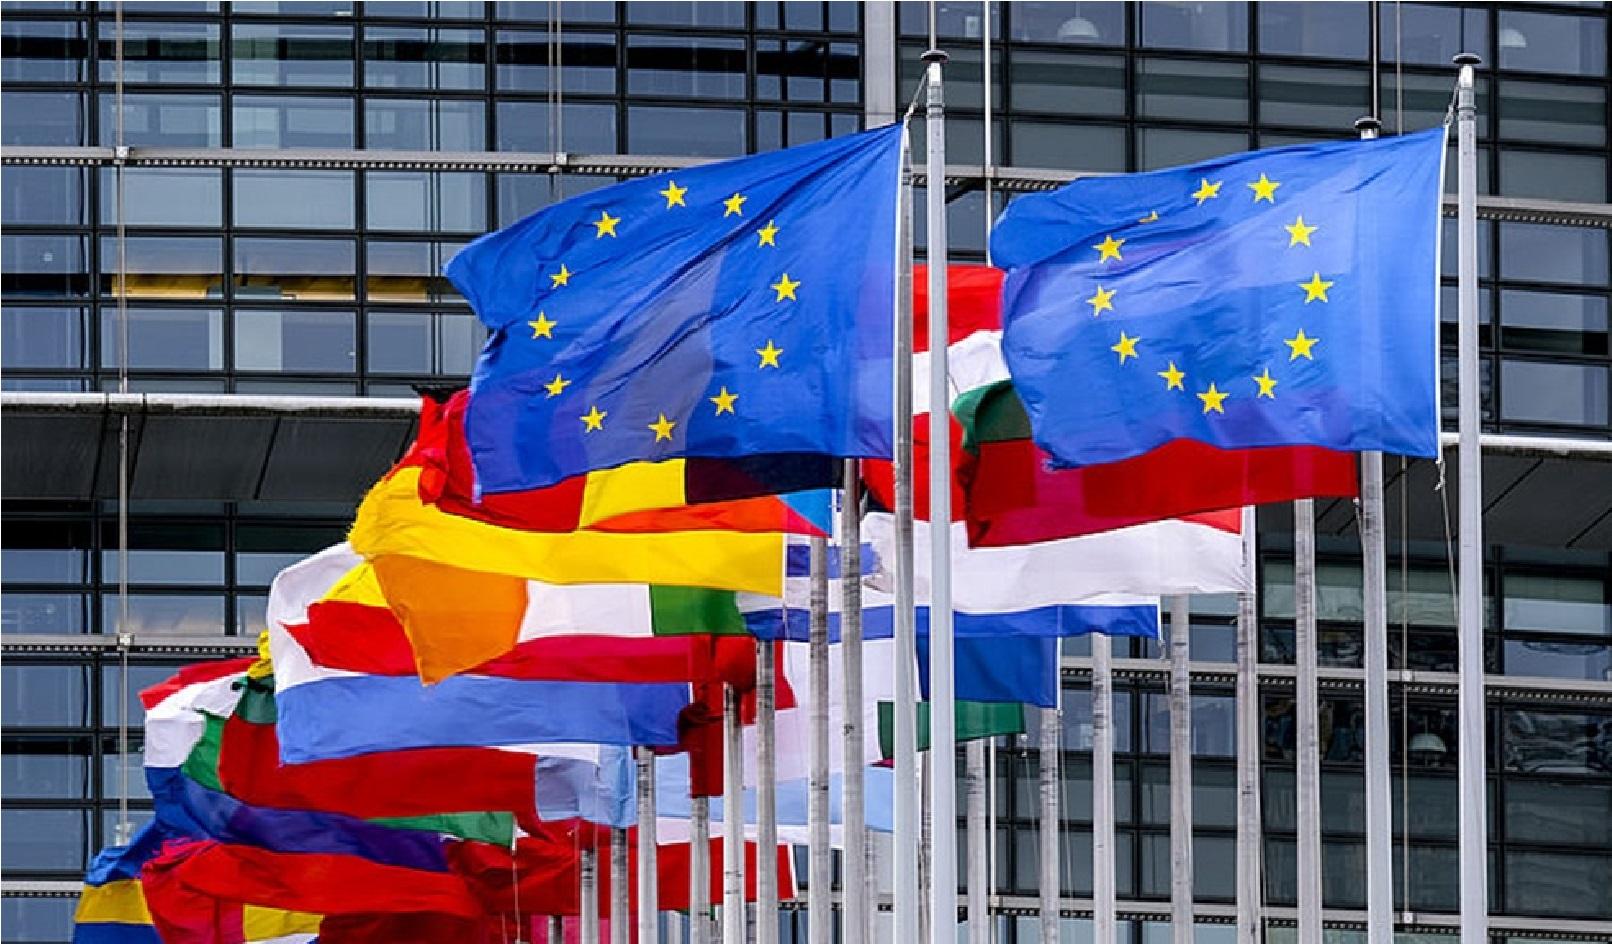 Quỹ hồi phục kinh tế của Liên minh Châu Âu bị trì hoãn là điều khó tránh